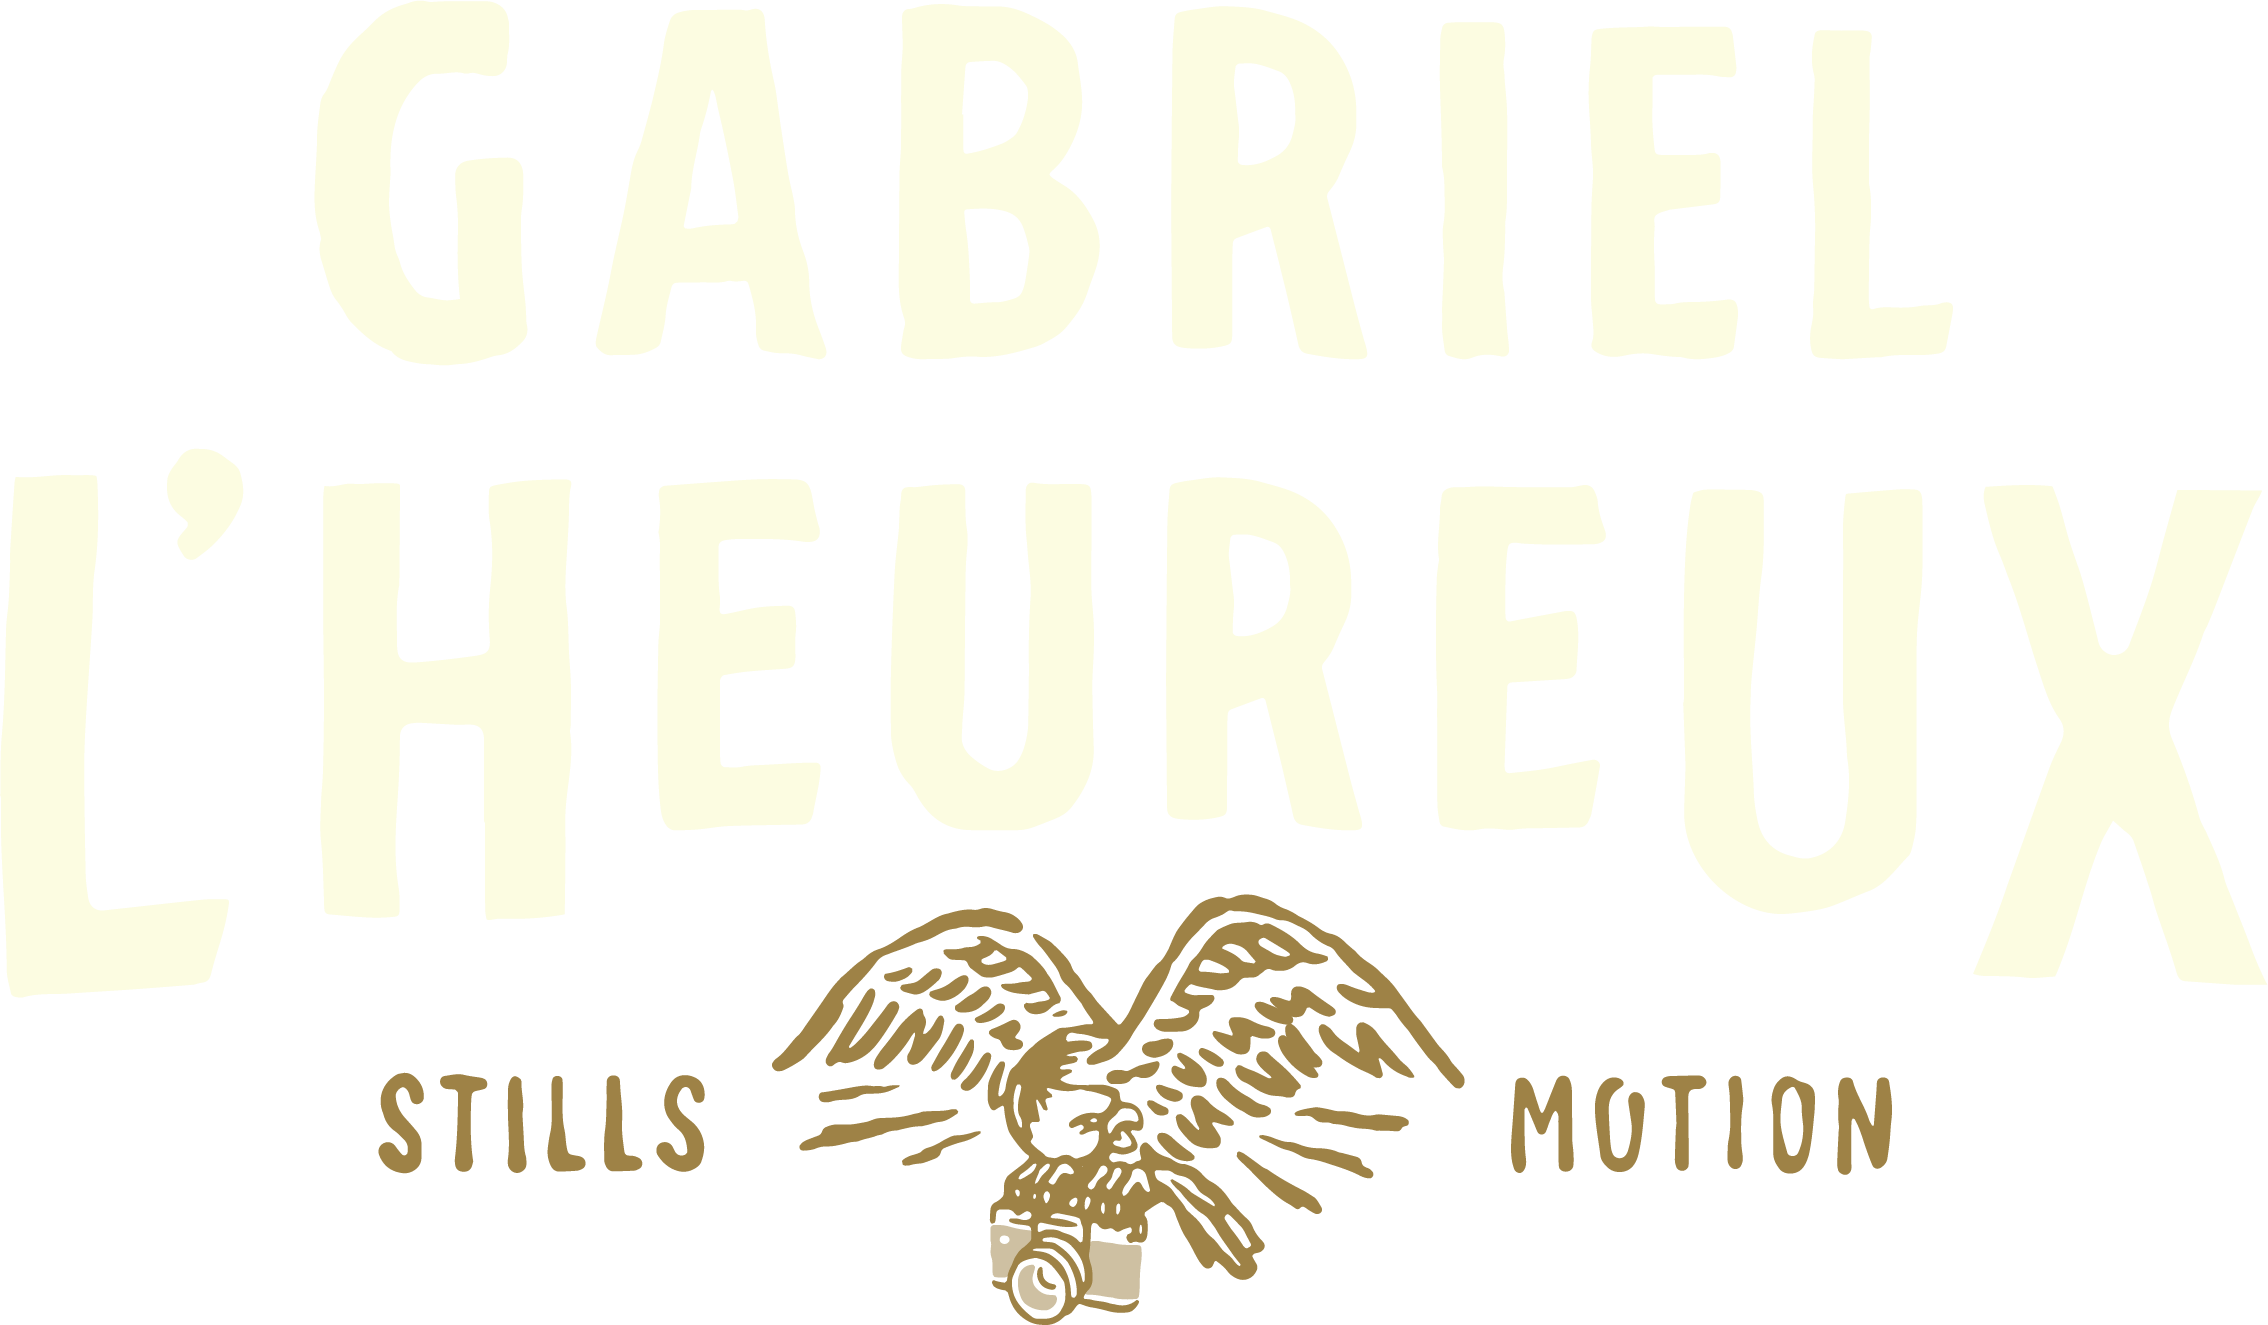 Gabe L'Heureux